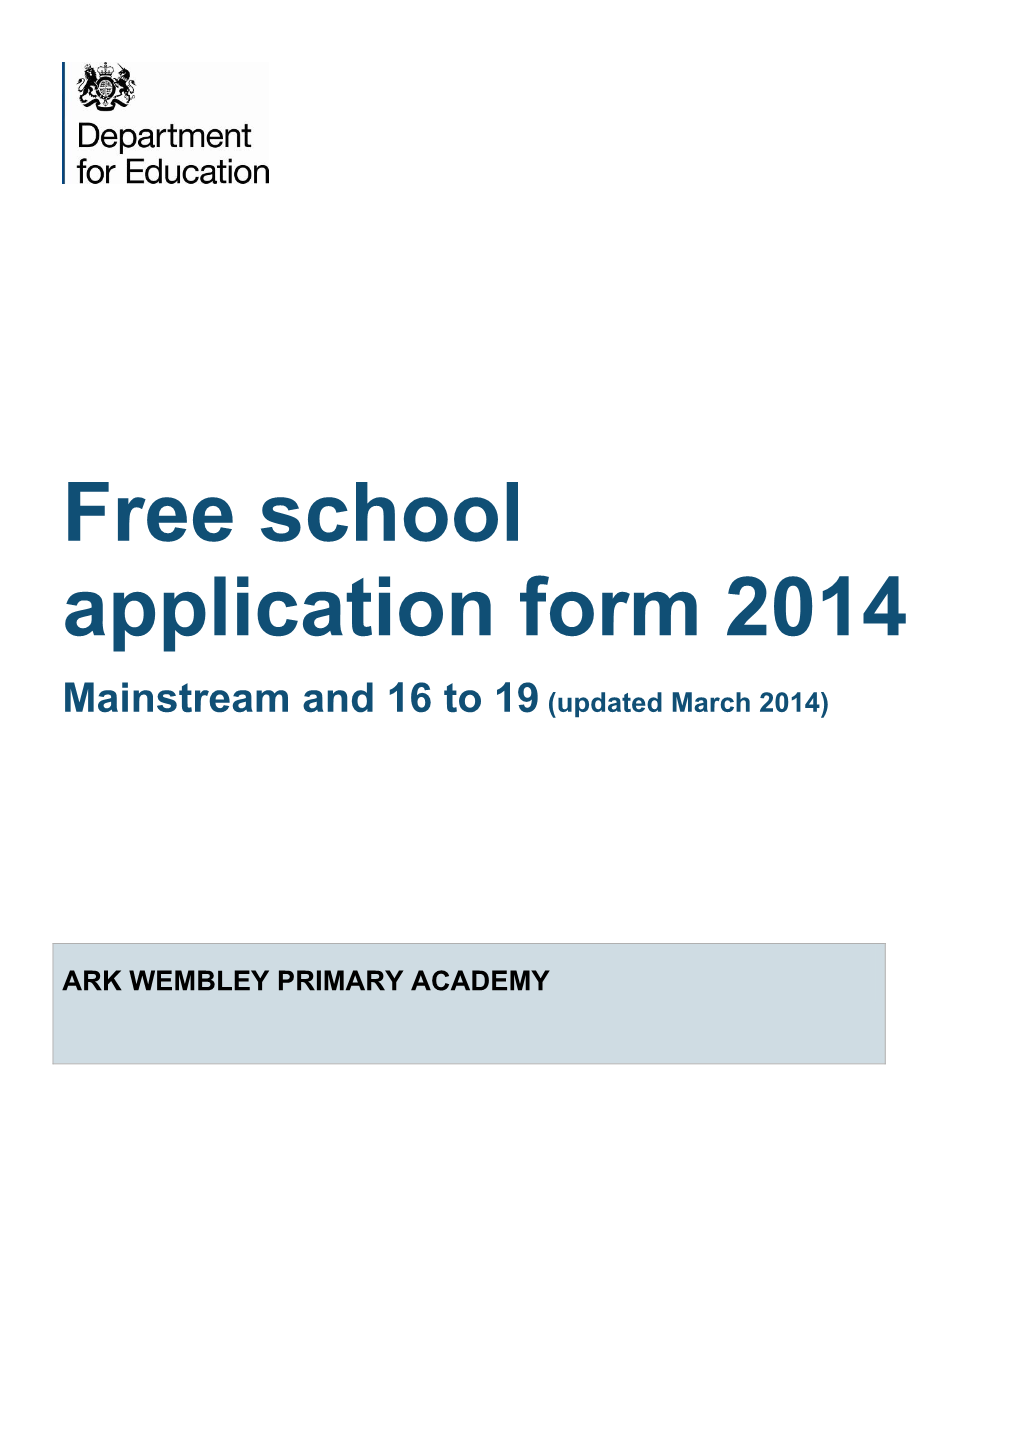 Ark Wembley Primary Academy